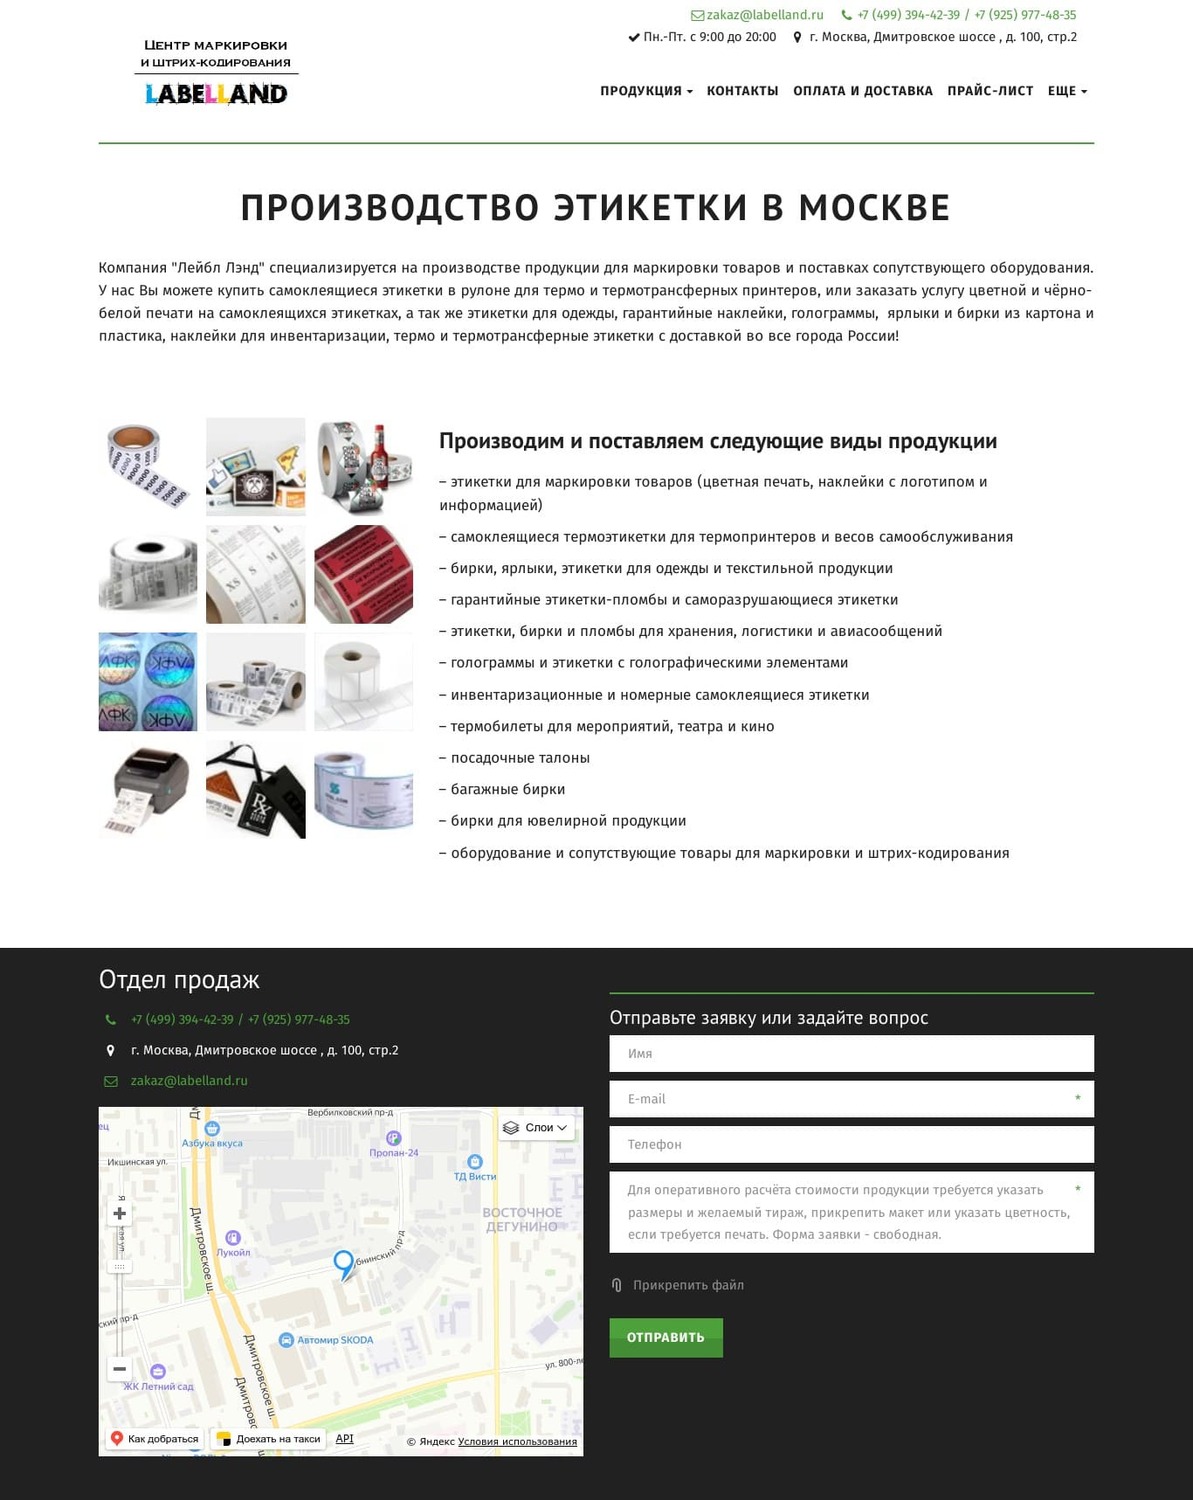 Сайт "Производство этикетки в Москве" до доработки, десктопная версия